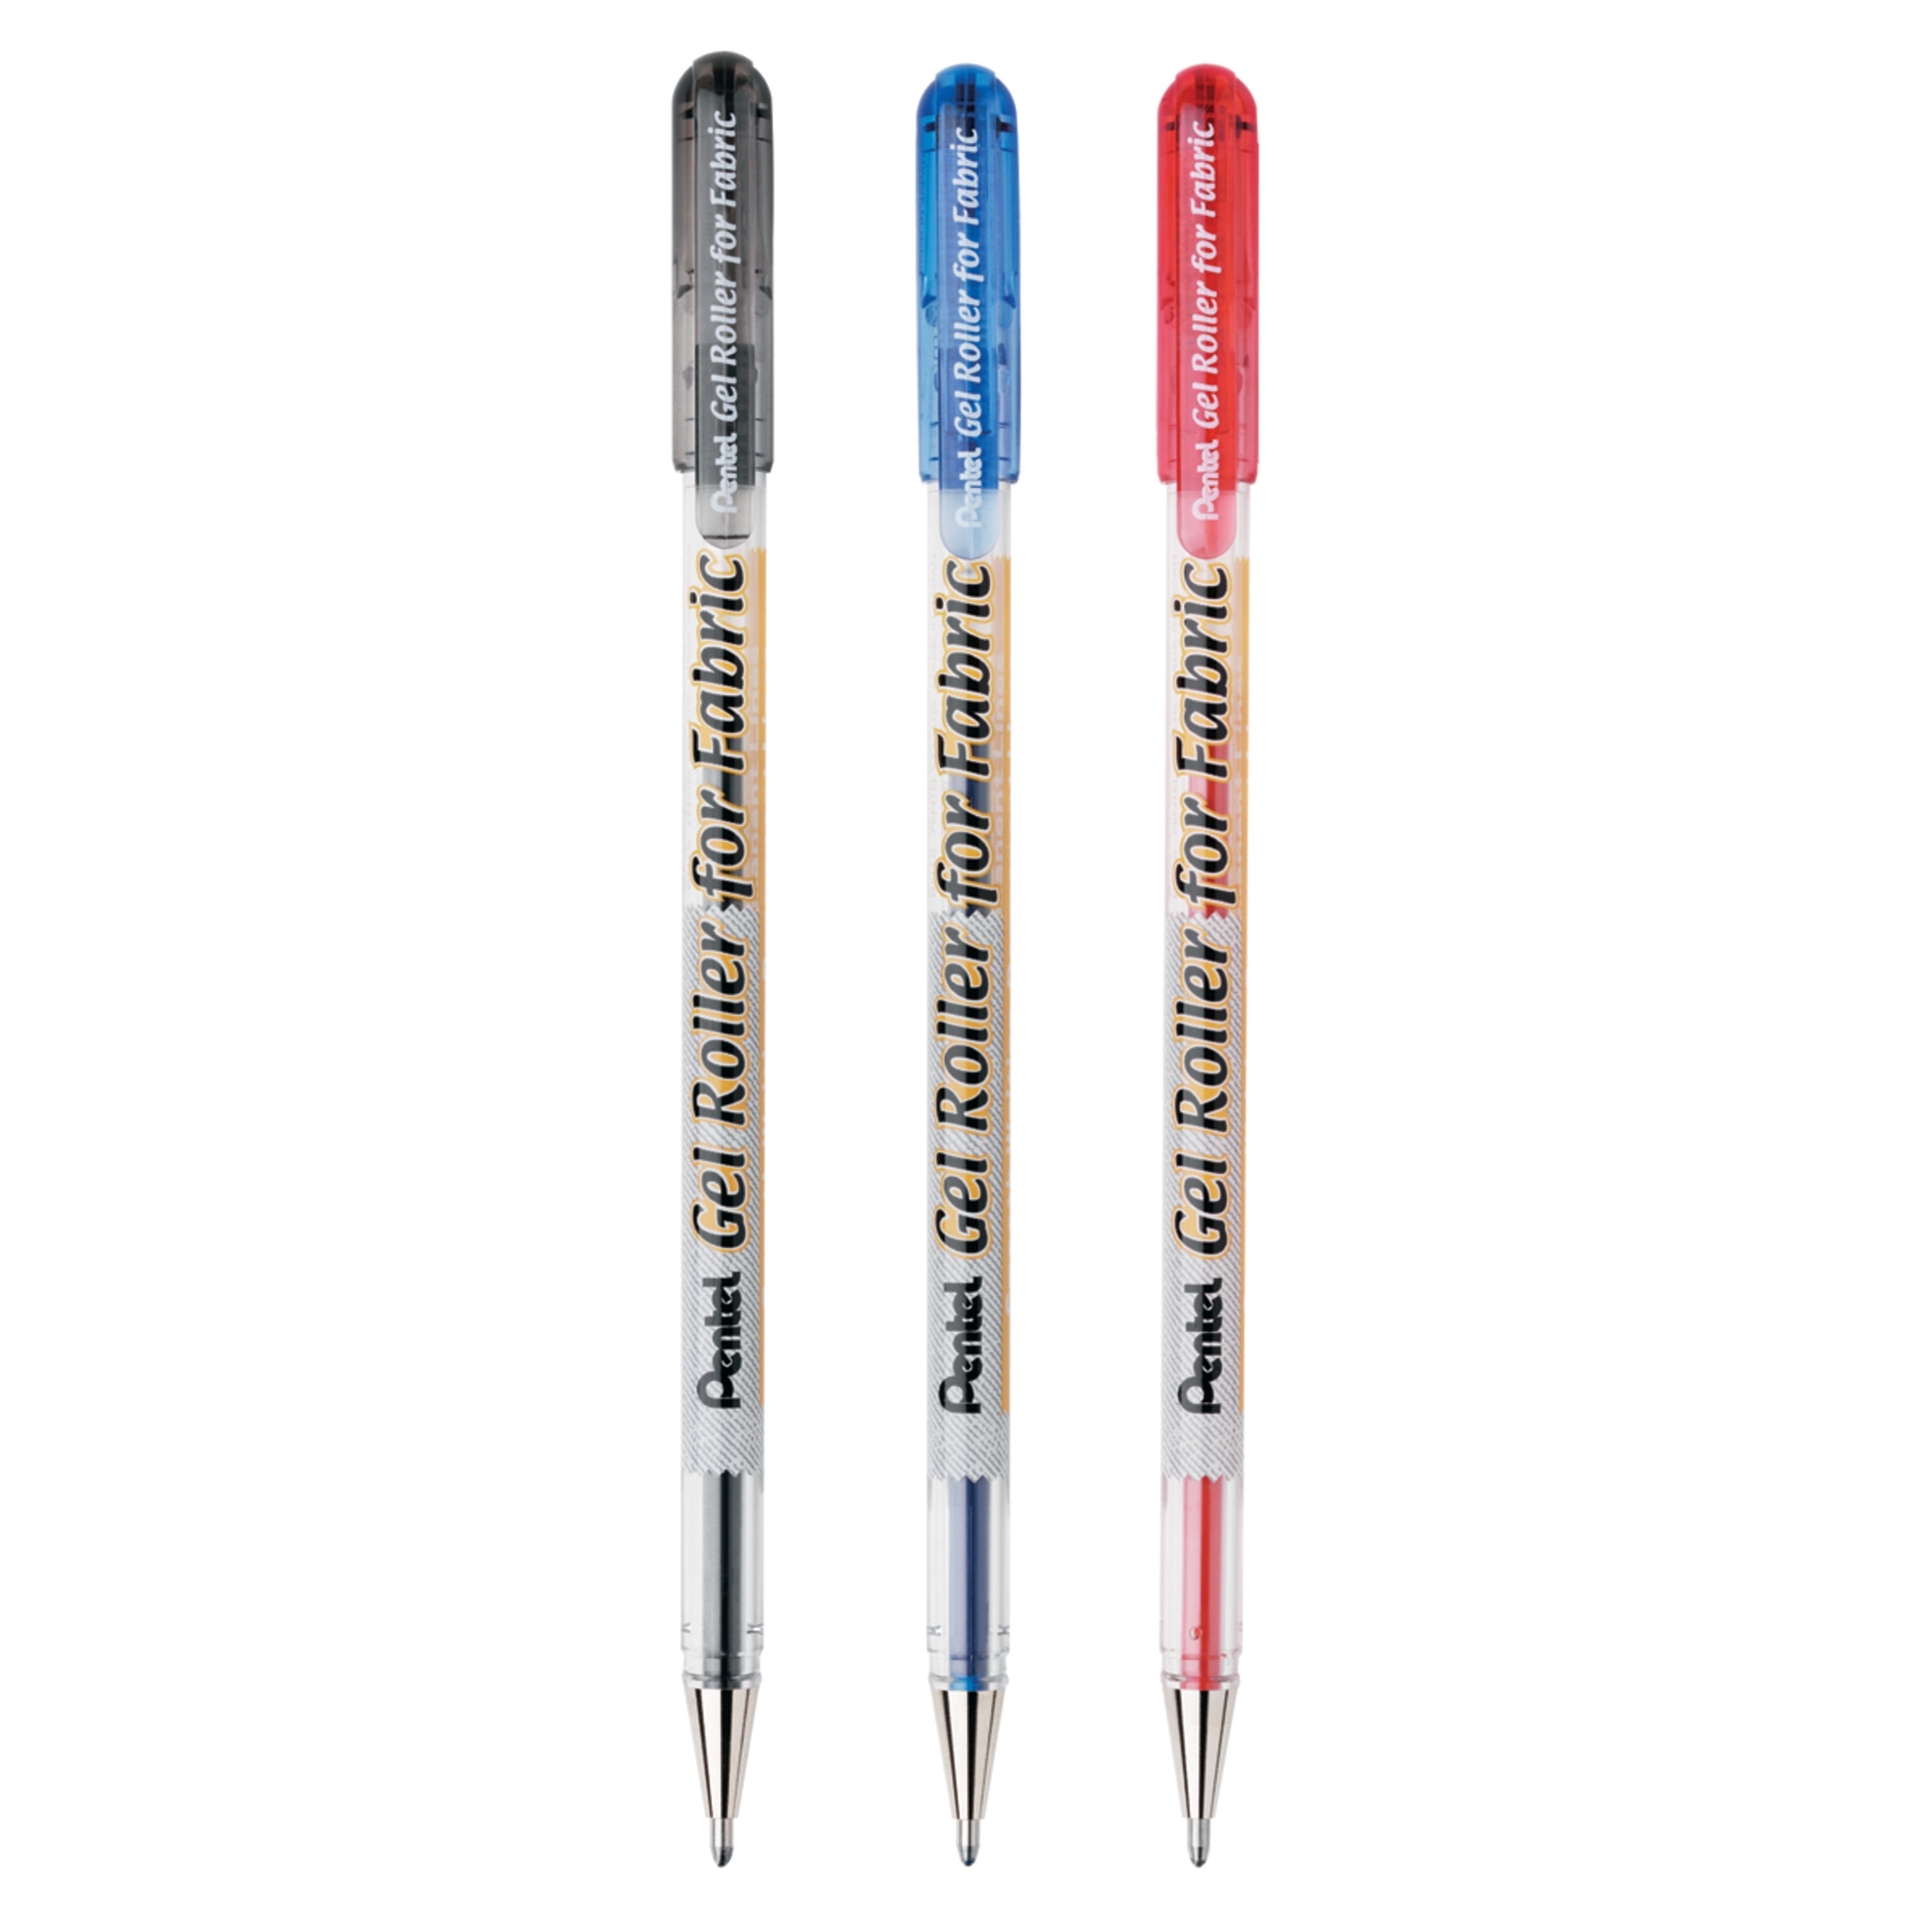 Drawing Pens: Rollerball, Fineliner, Gel Ink Pens –